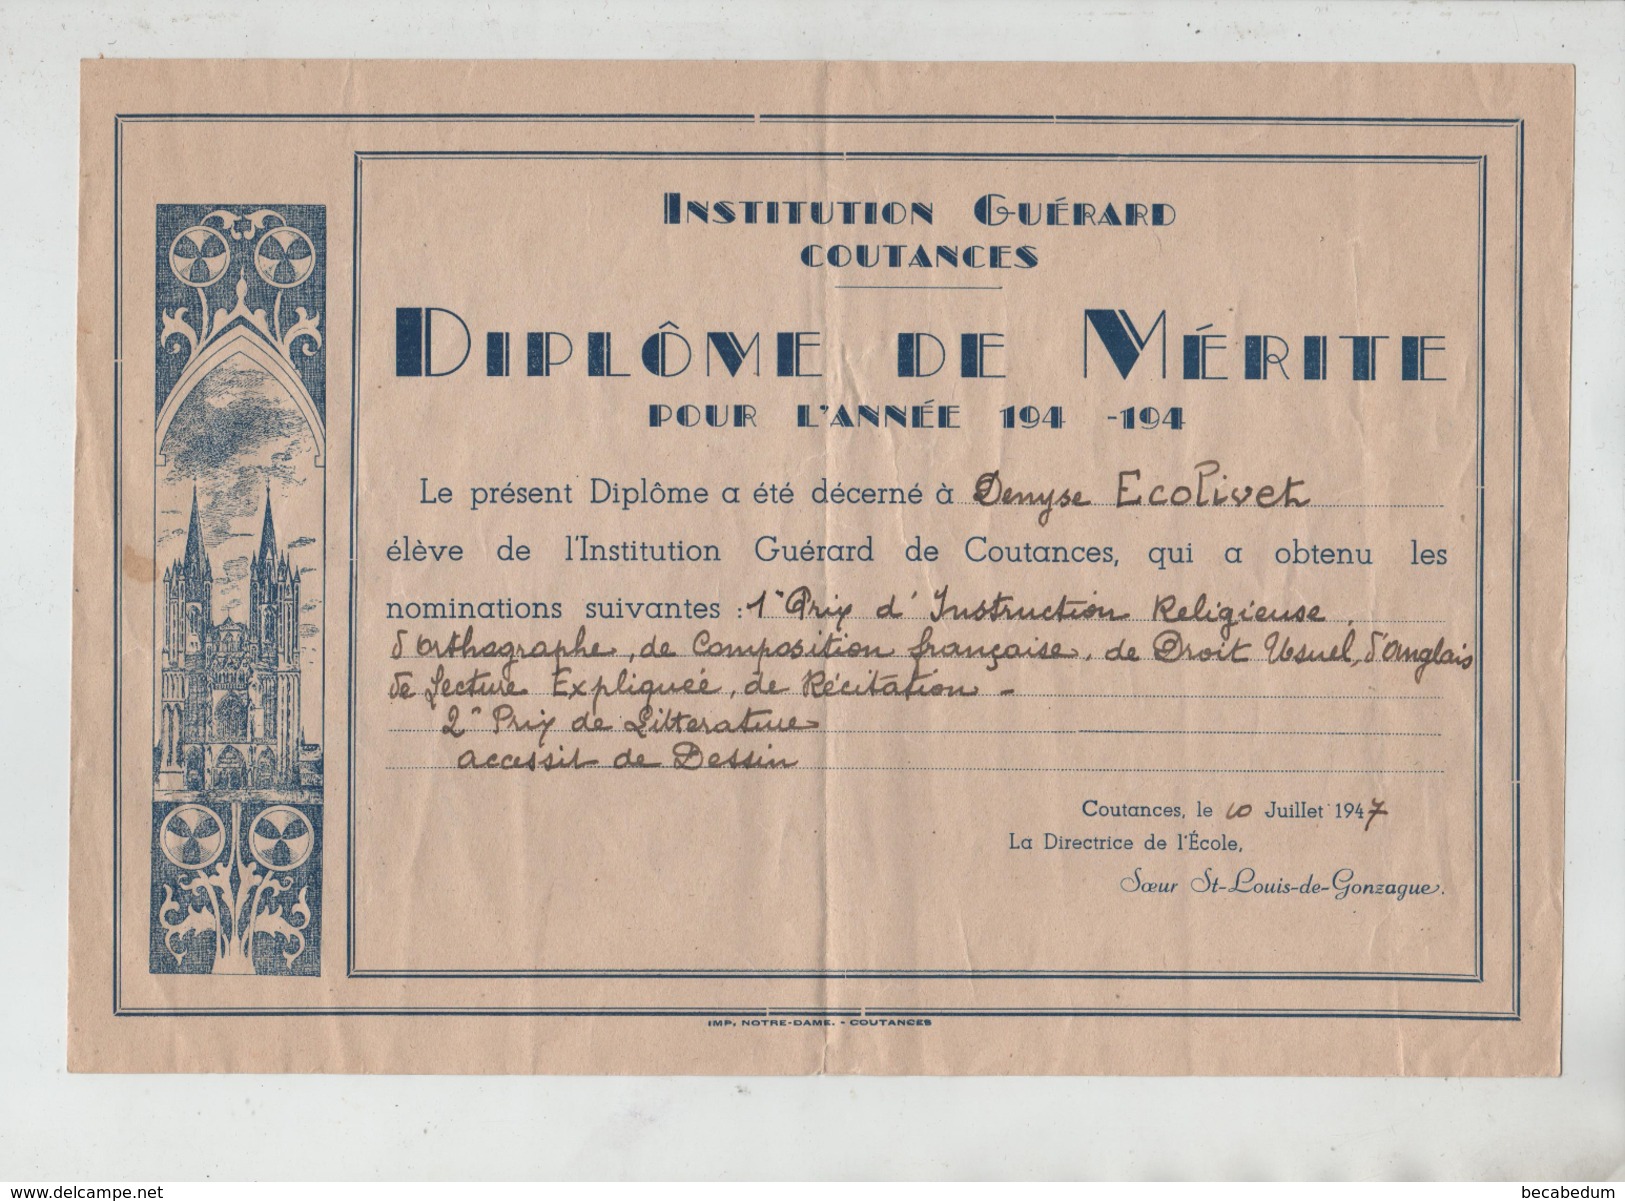 Institution Guérard Coutances Diplôme De Mérite 1947 Soeur St Louis De Gonzague - Diplômes & Bulletins Scolaires